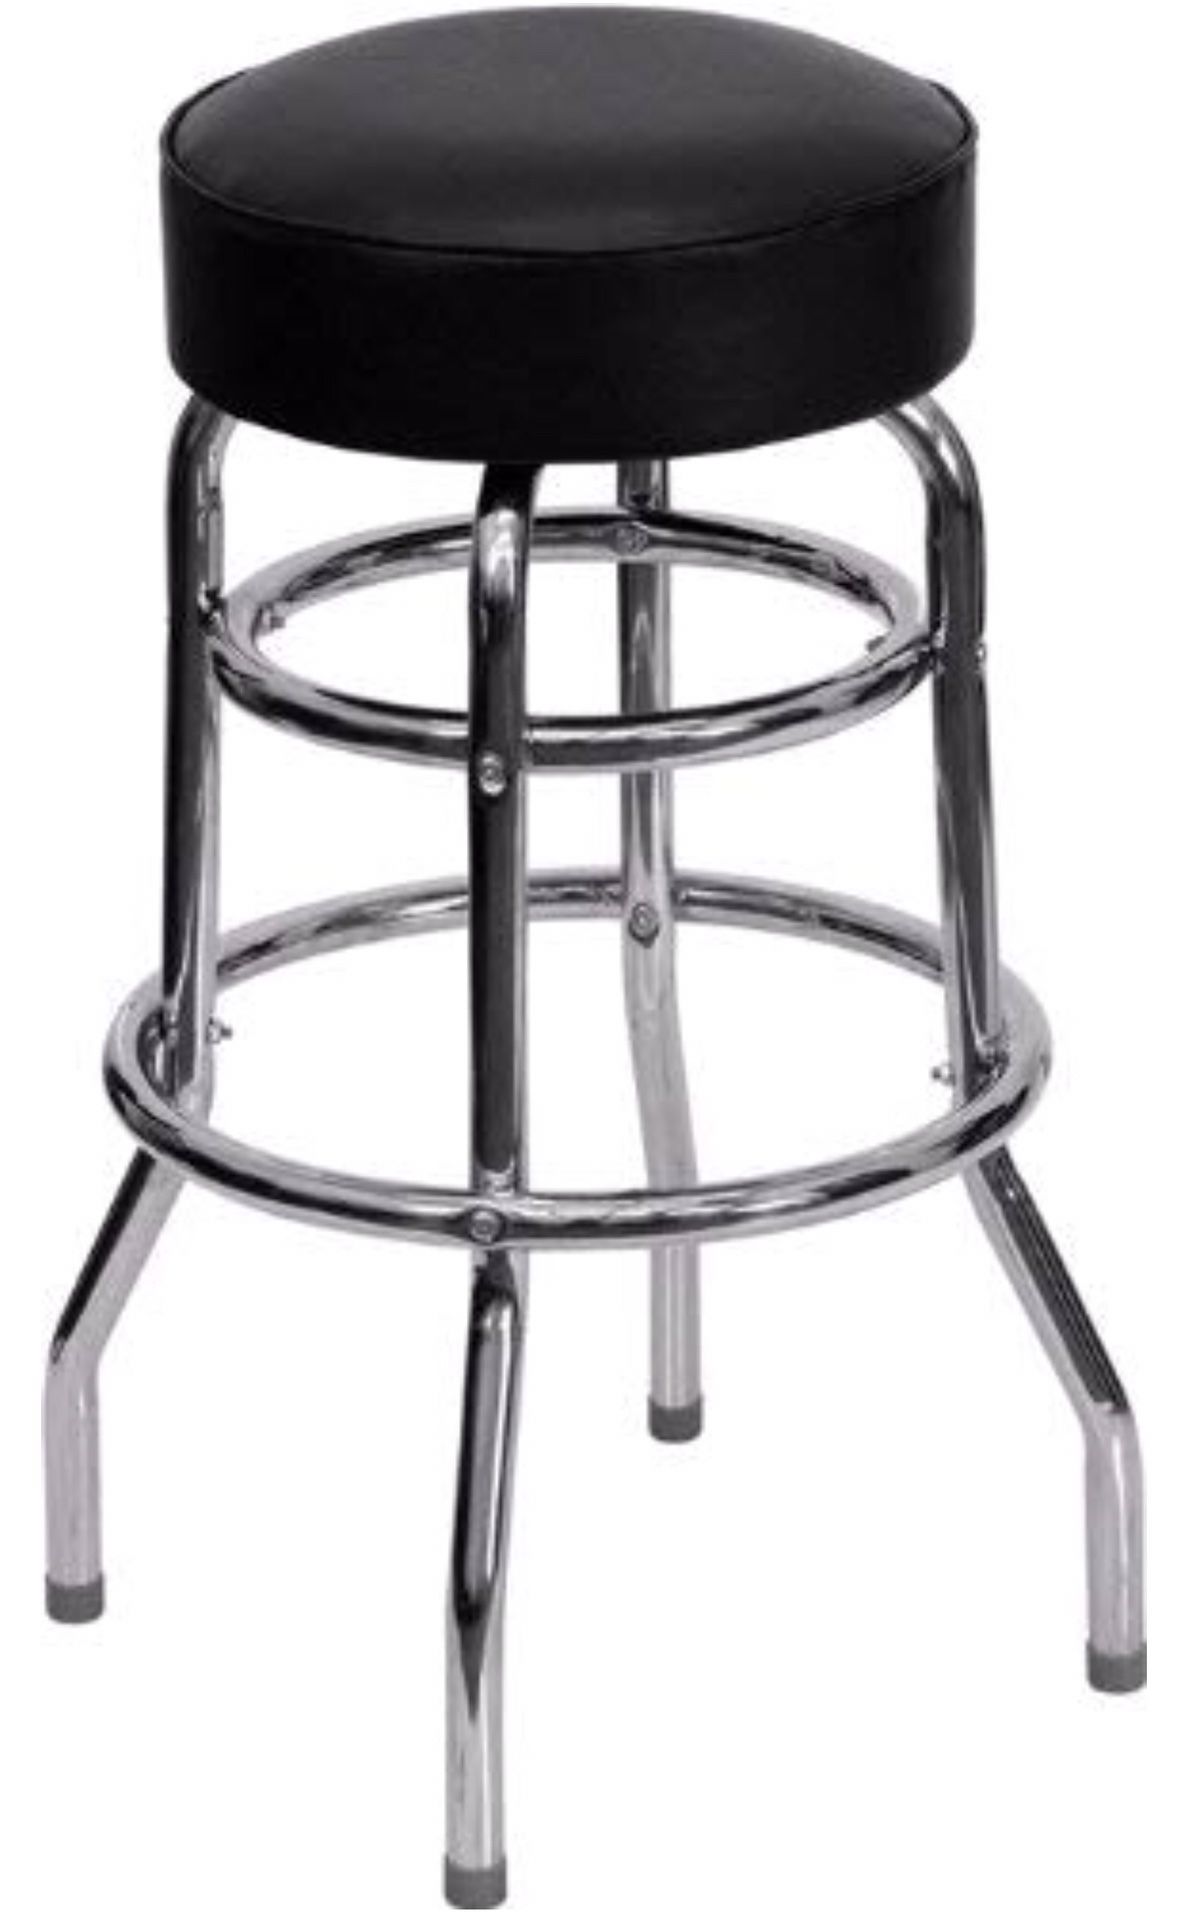 4 doble ring chrome bar stool